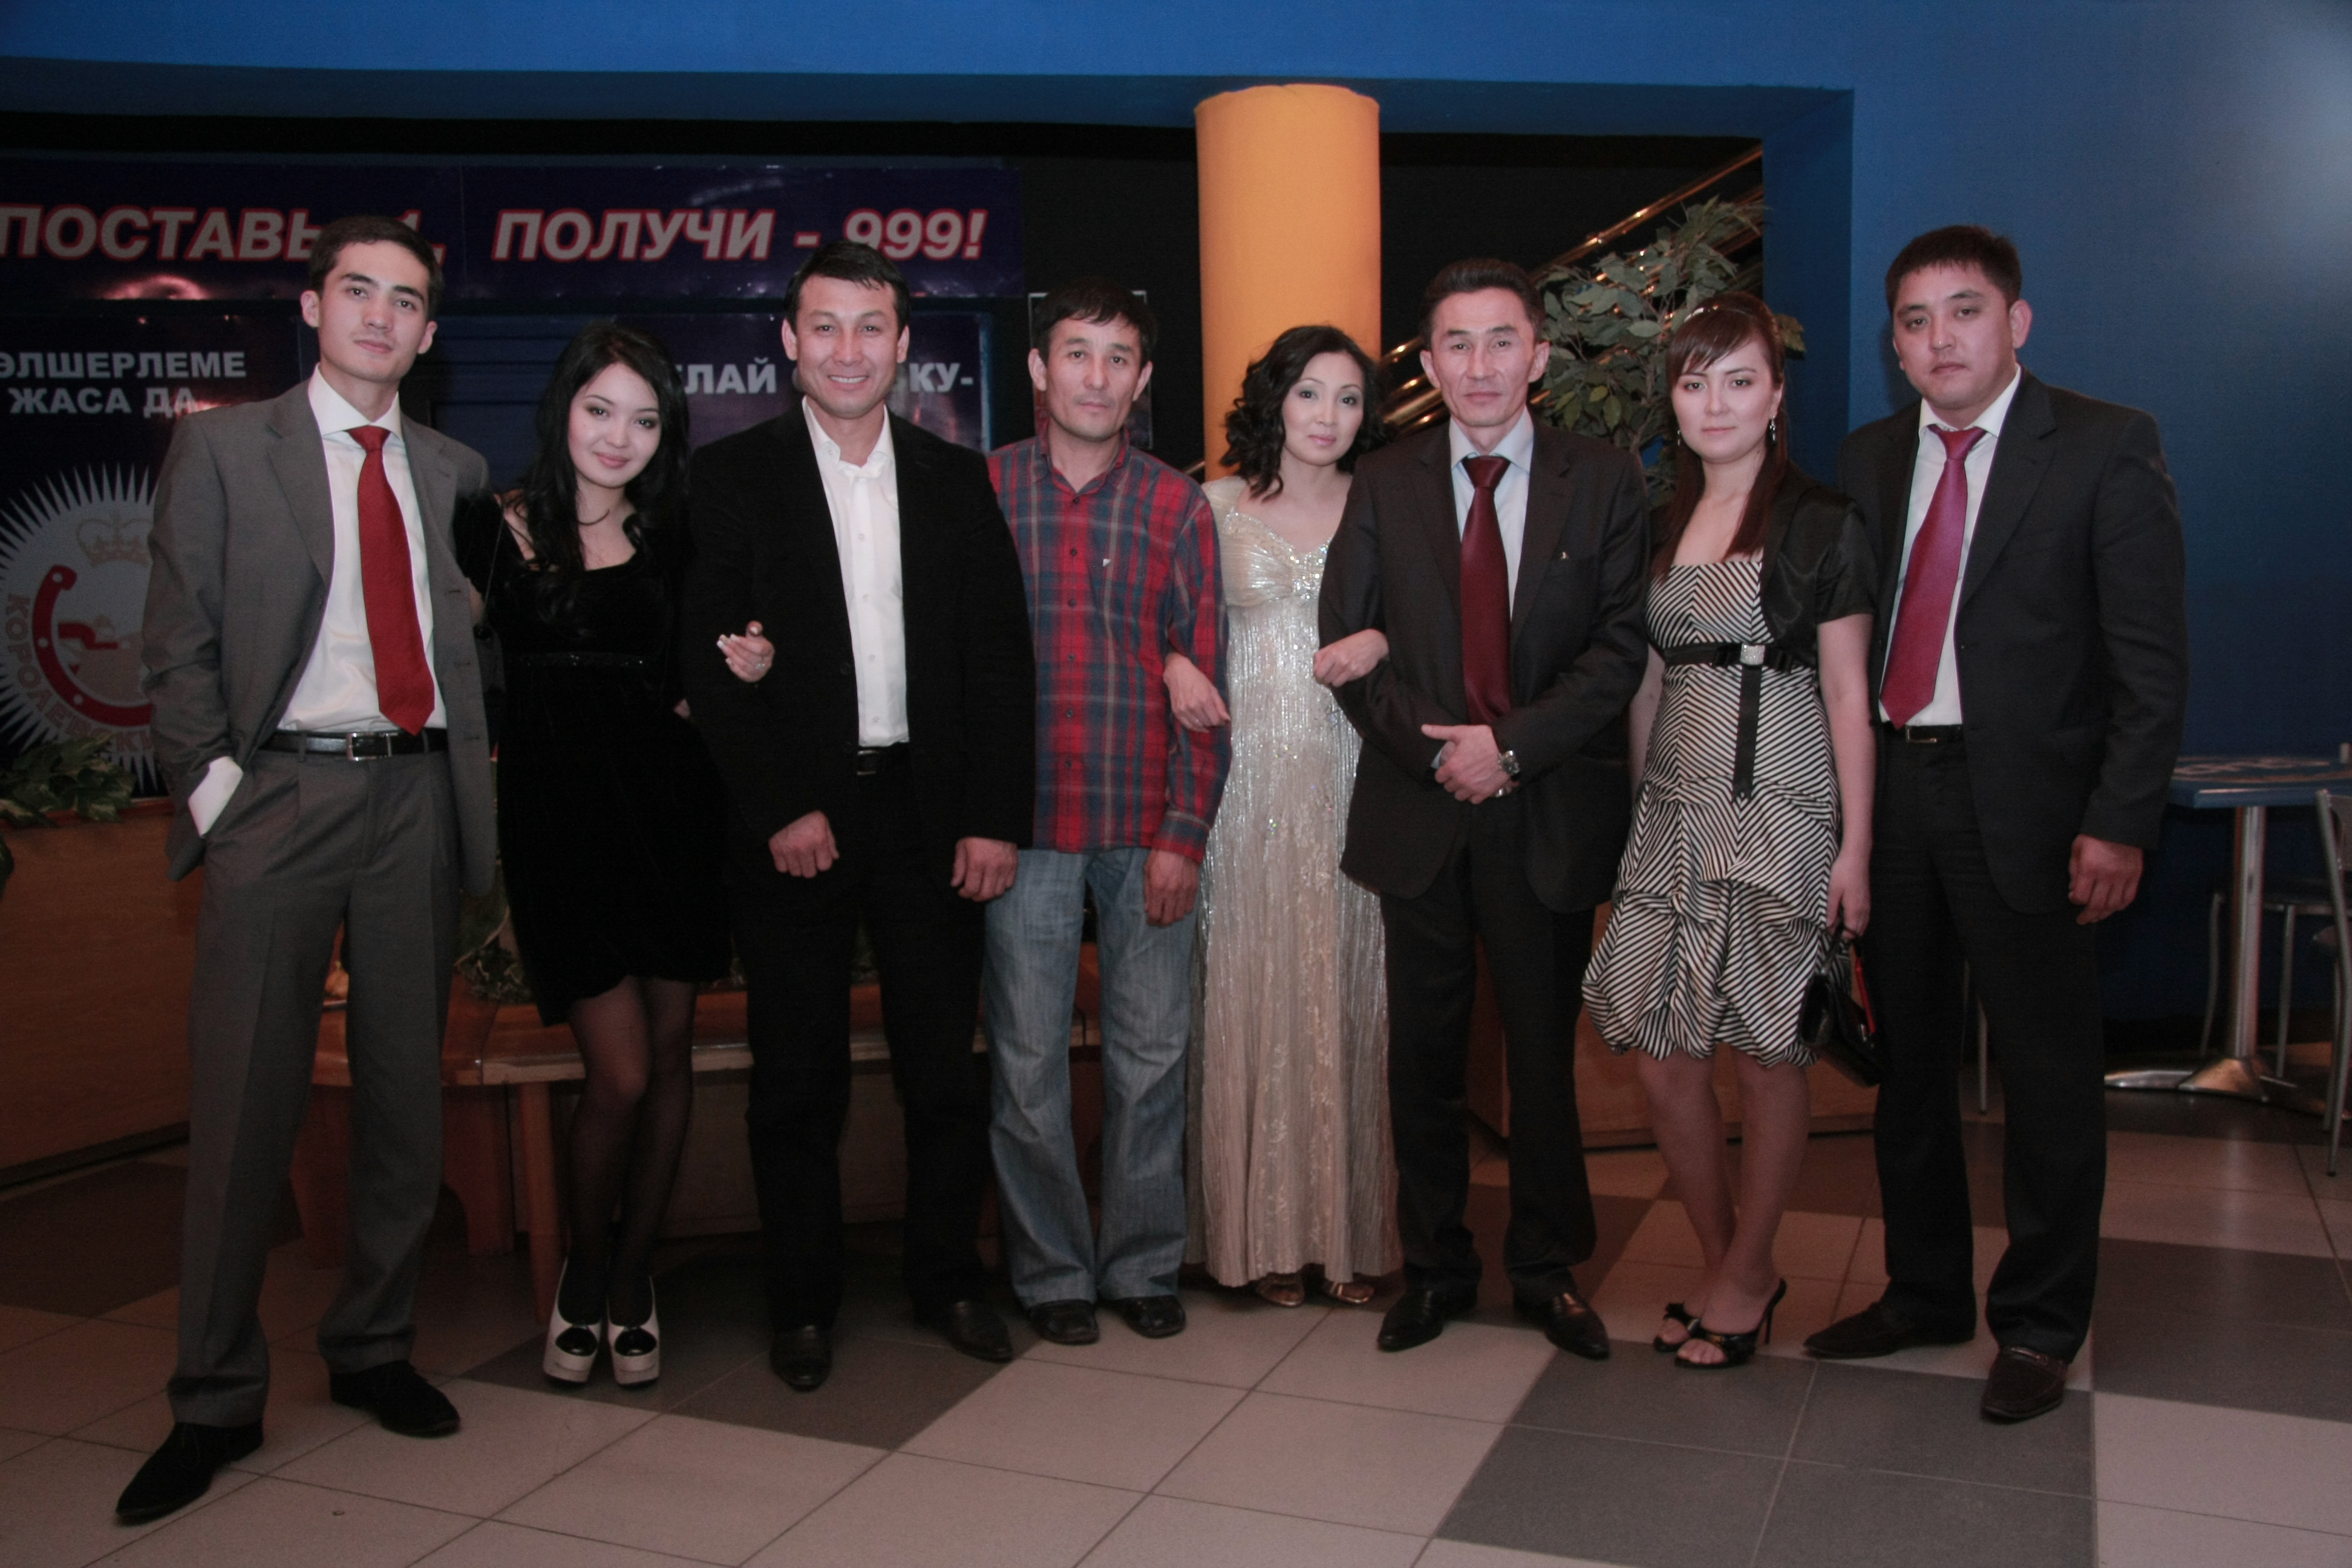 On a release of the film Reverse Side, 2009, Astana, Kazakhstan